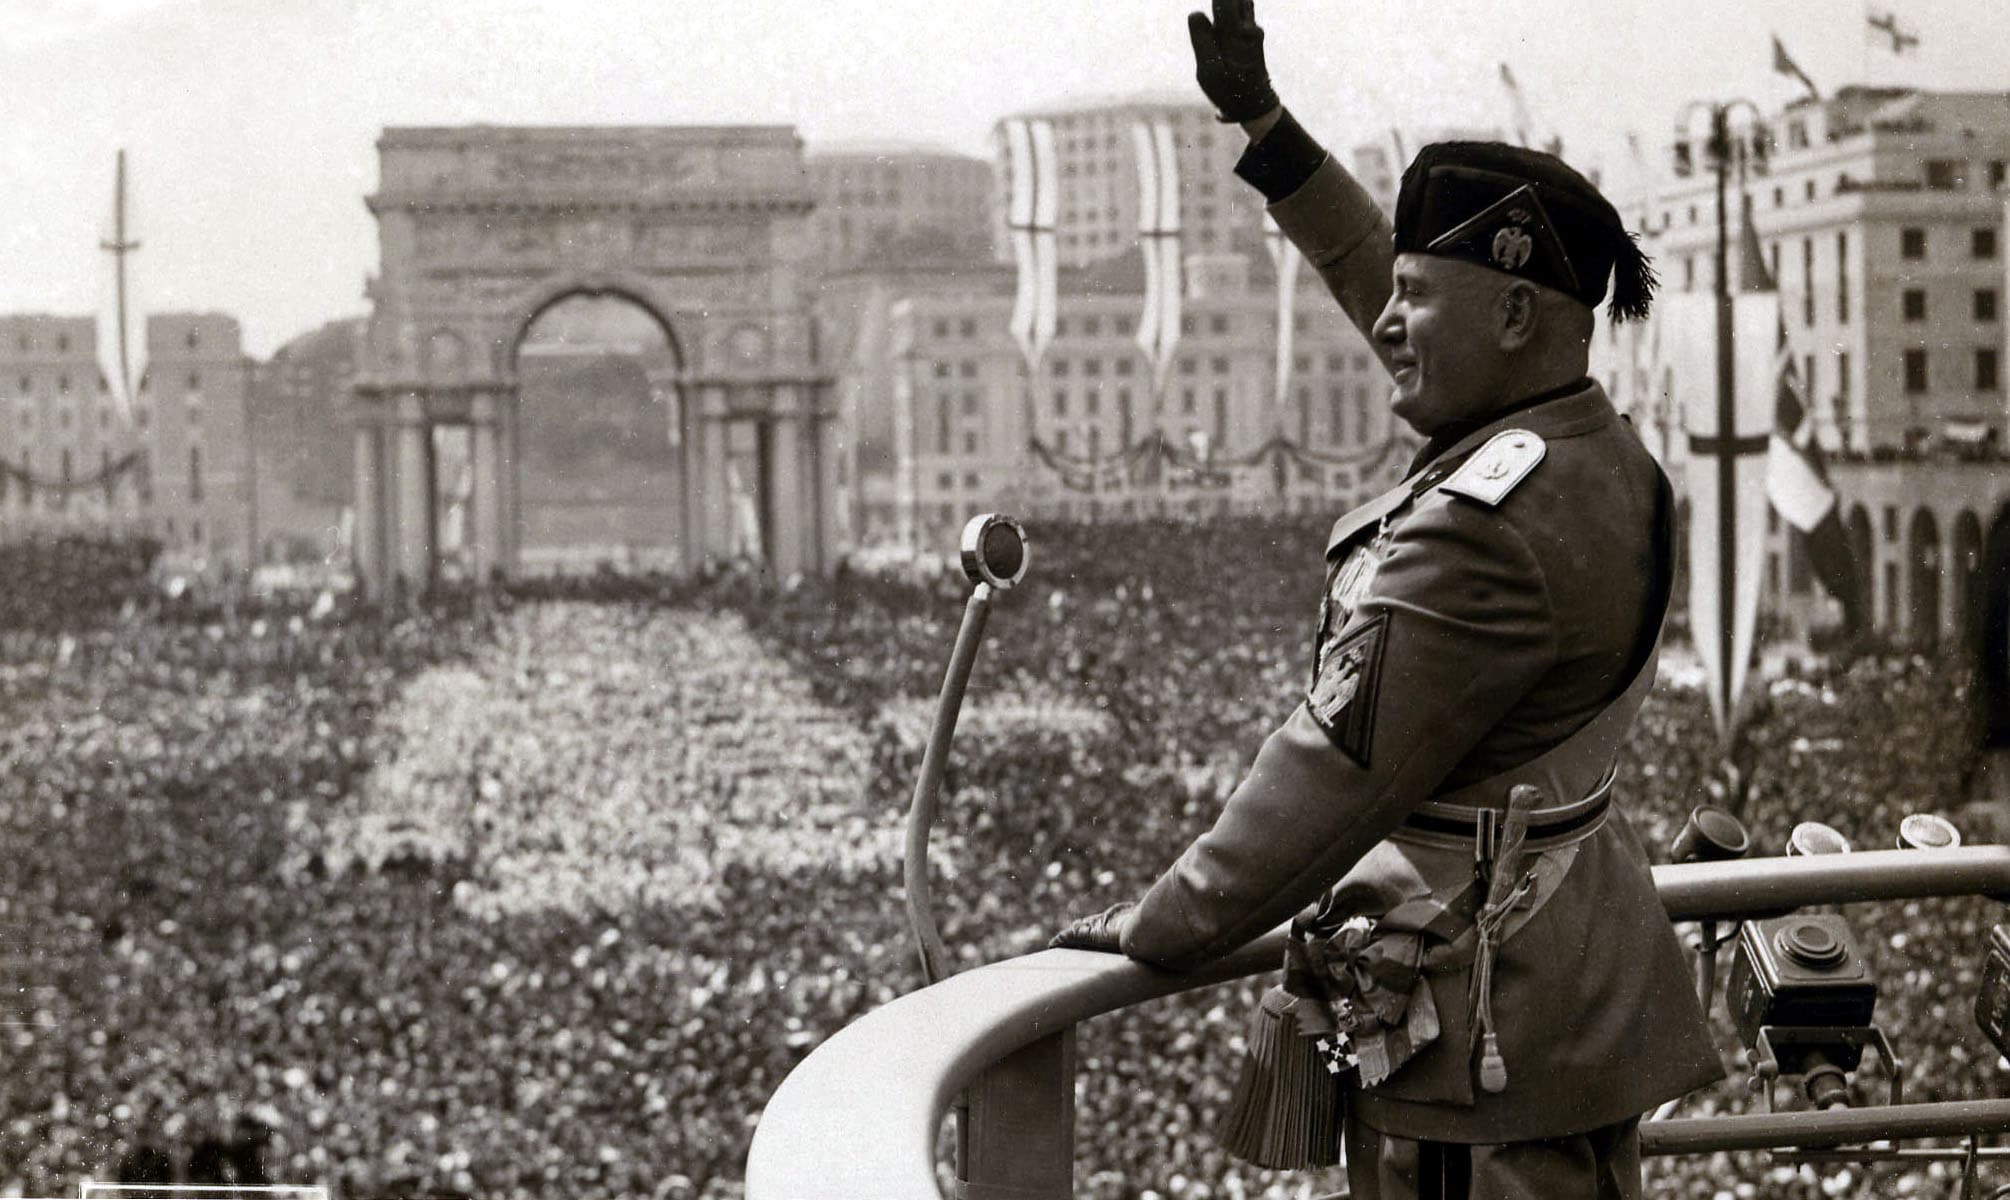 I radicali italiani: "Revocare tutte le cittadinanze a un criminale come Mussolini"